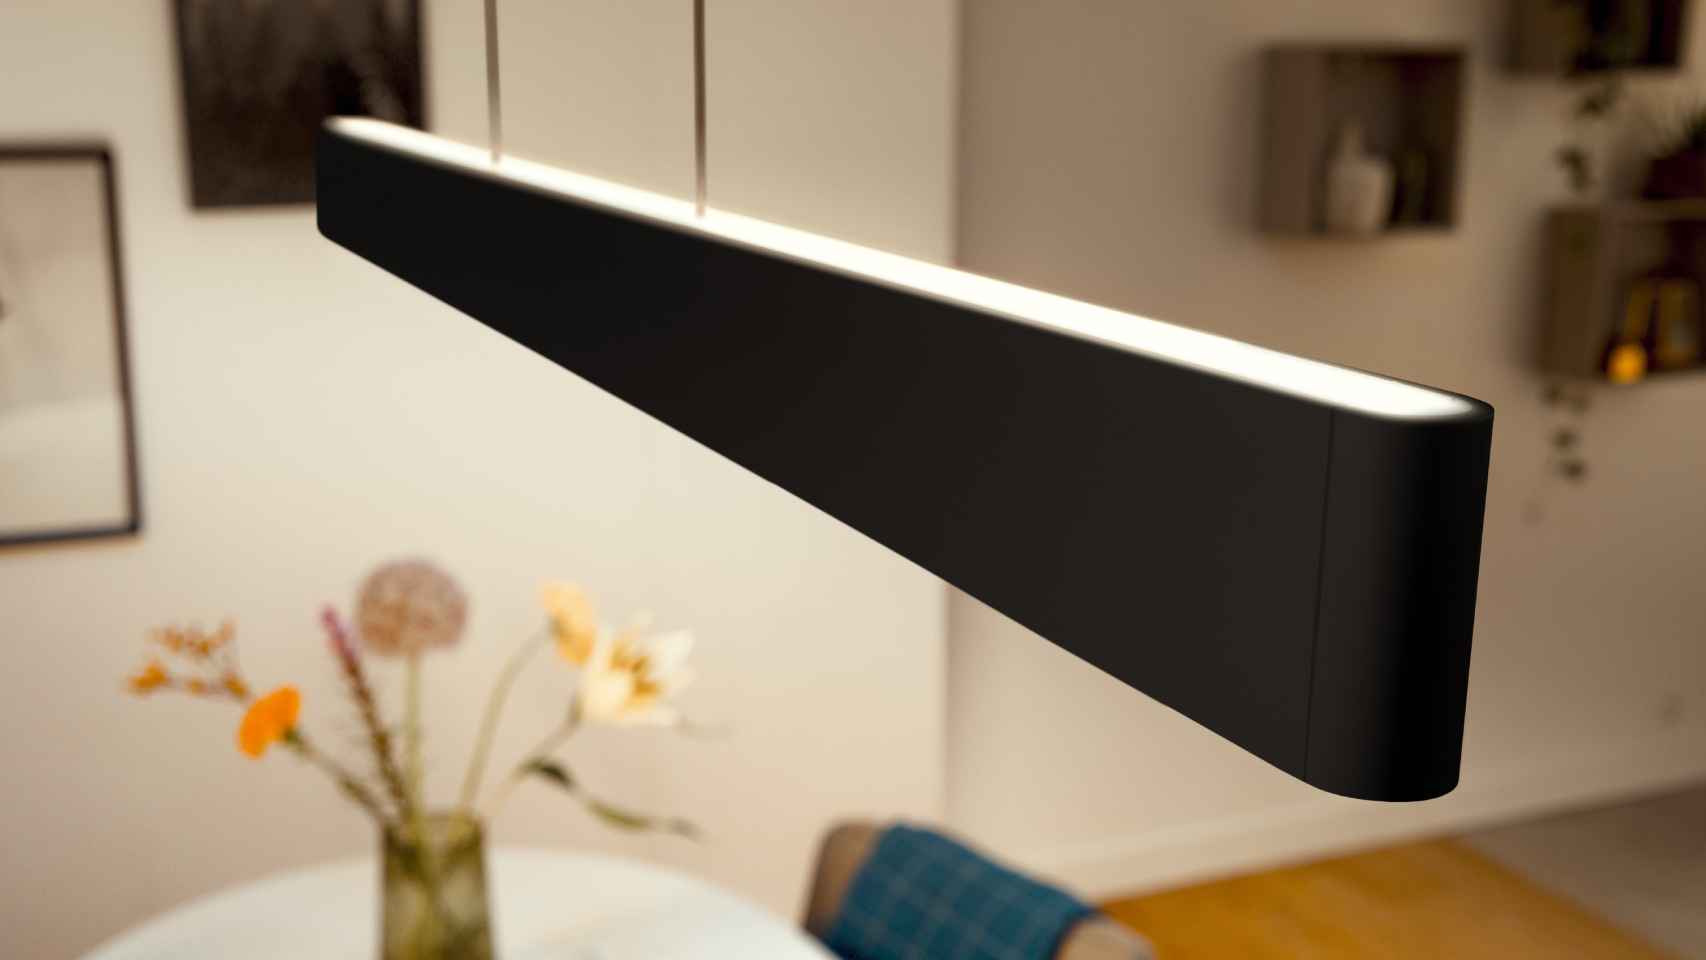 Lo último de Philips Hue es una tira LED para montar detrás de tu televisor